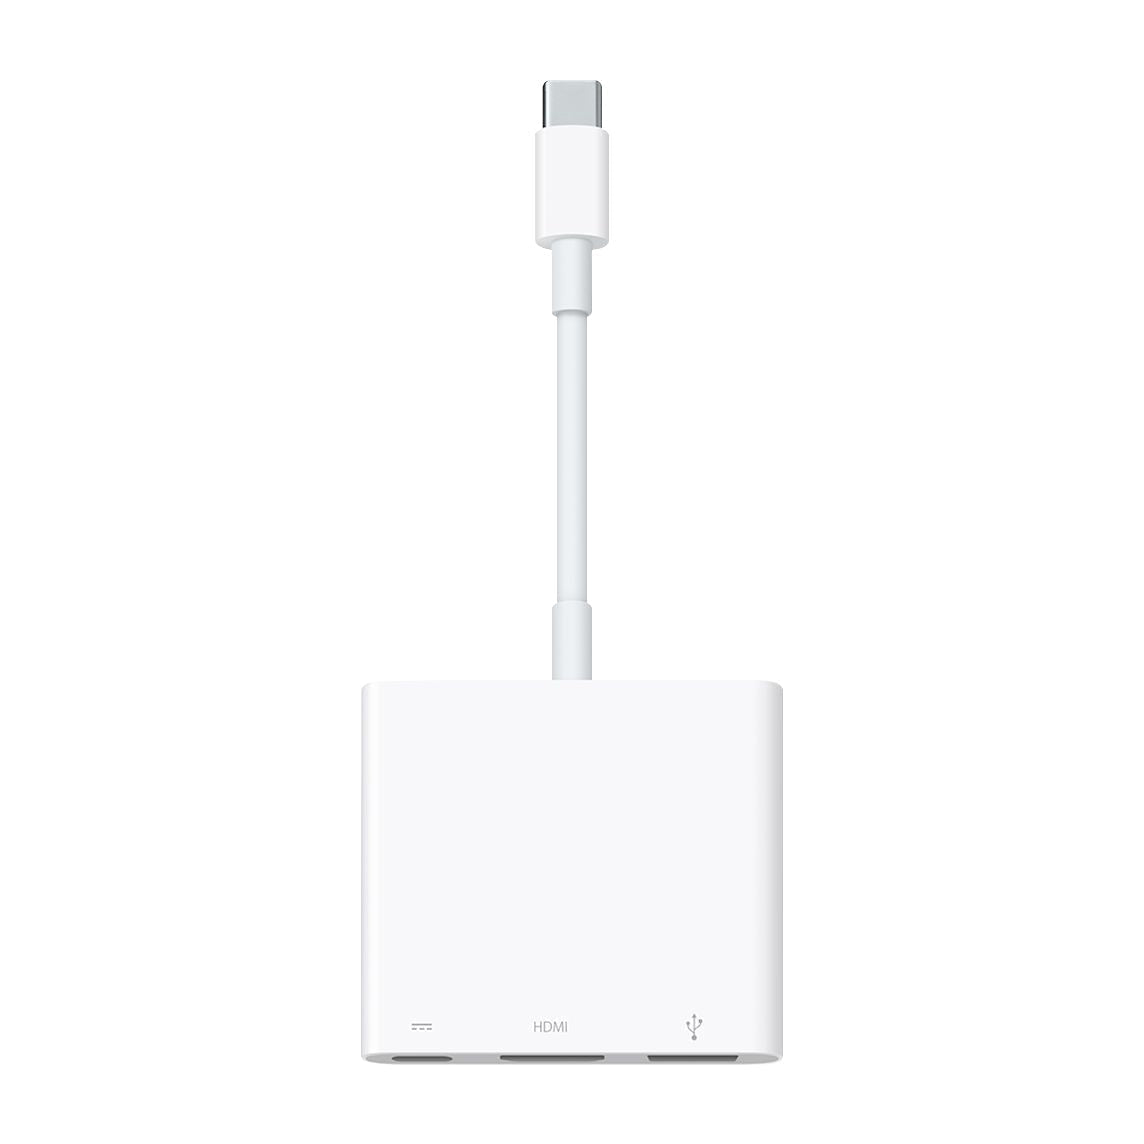 Apple power ADAPTER : USB-C DIGITAL AV MULTIPORT